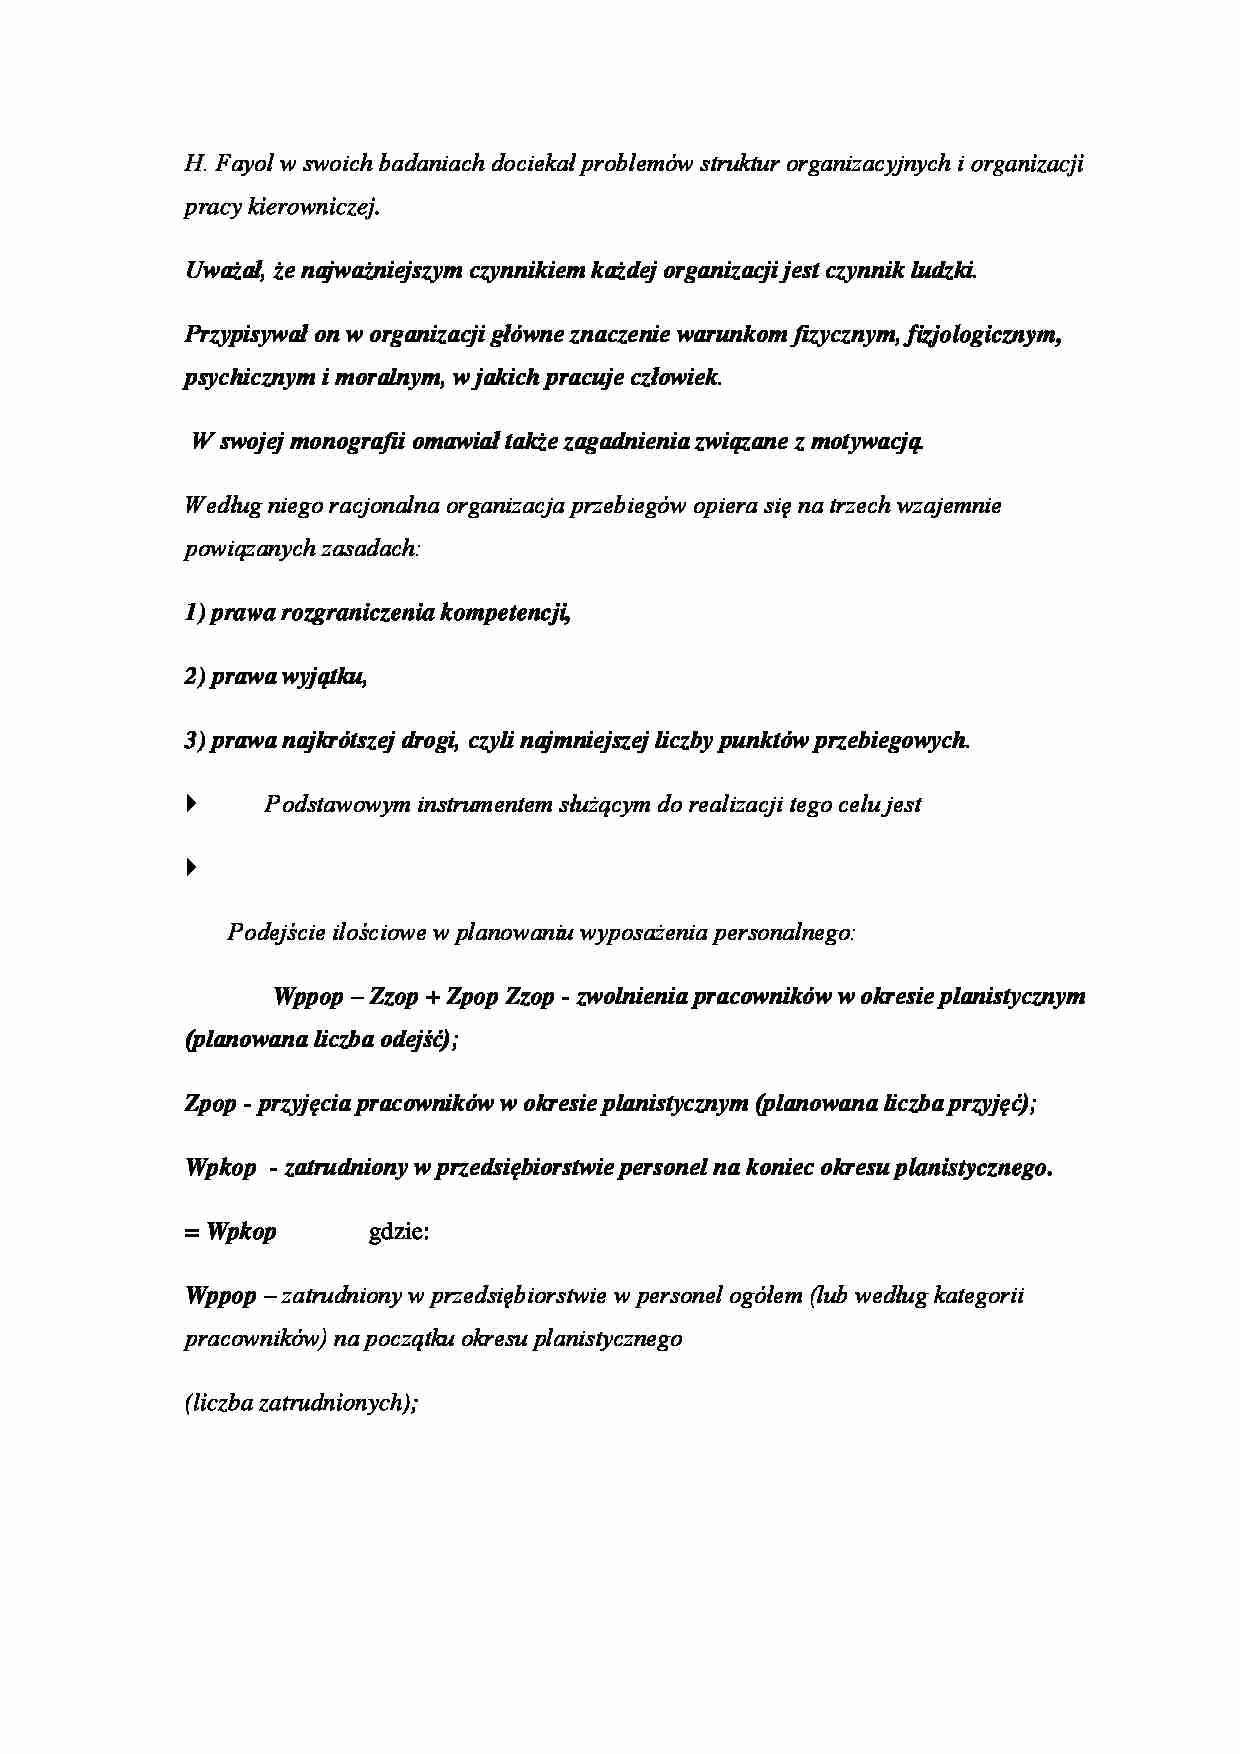 H. Fayol - struktury organizacyjne - strona 1